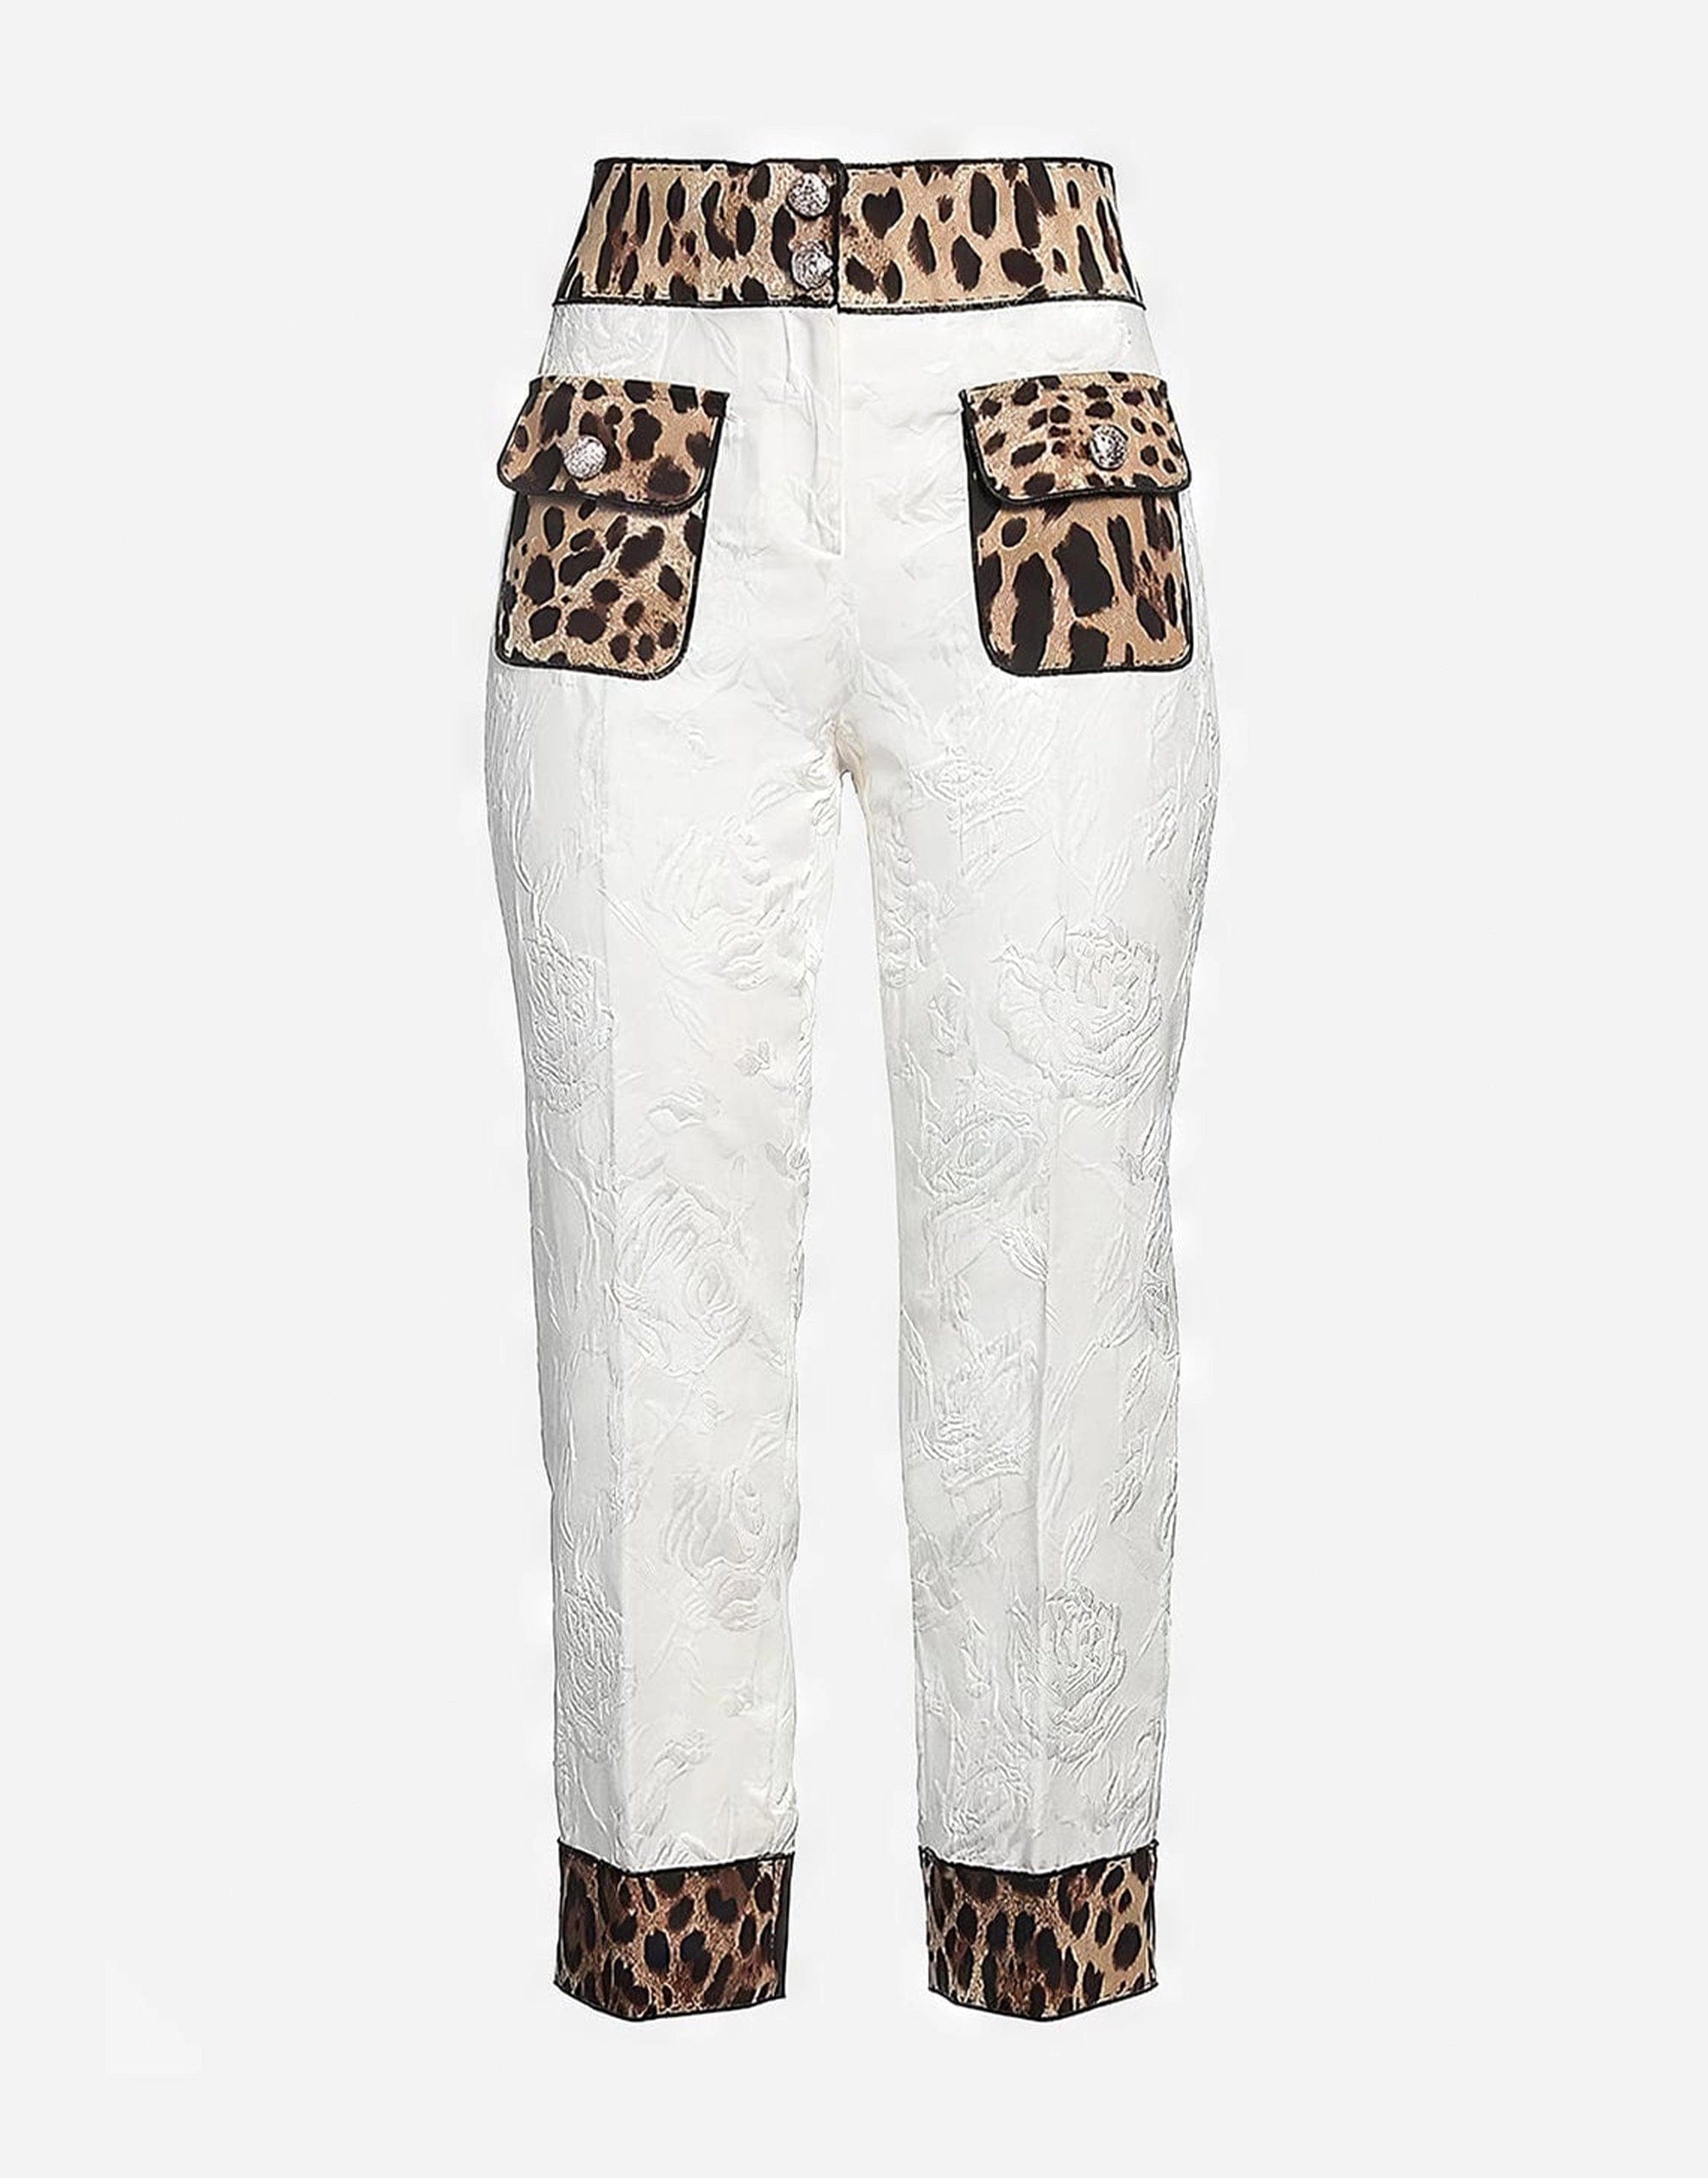 Dolce & Gabbana High-Waist Leopard Print Pants